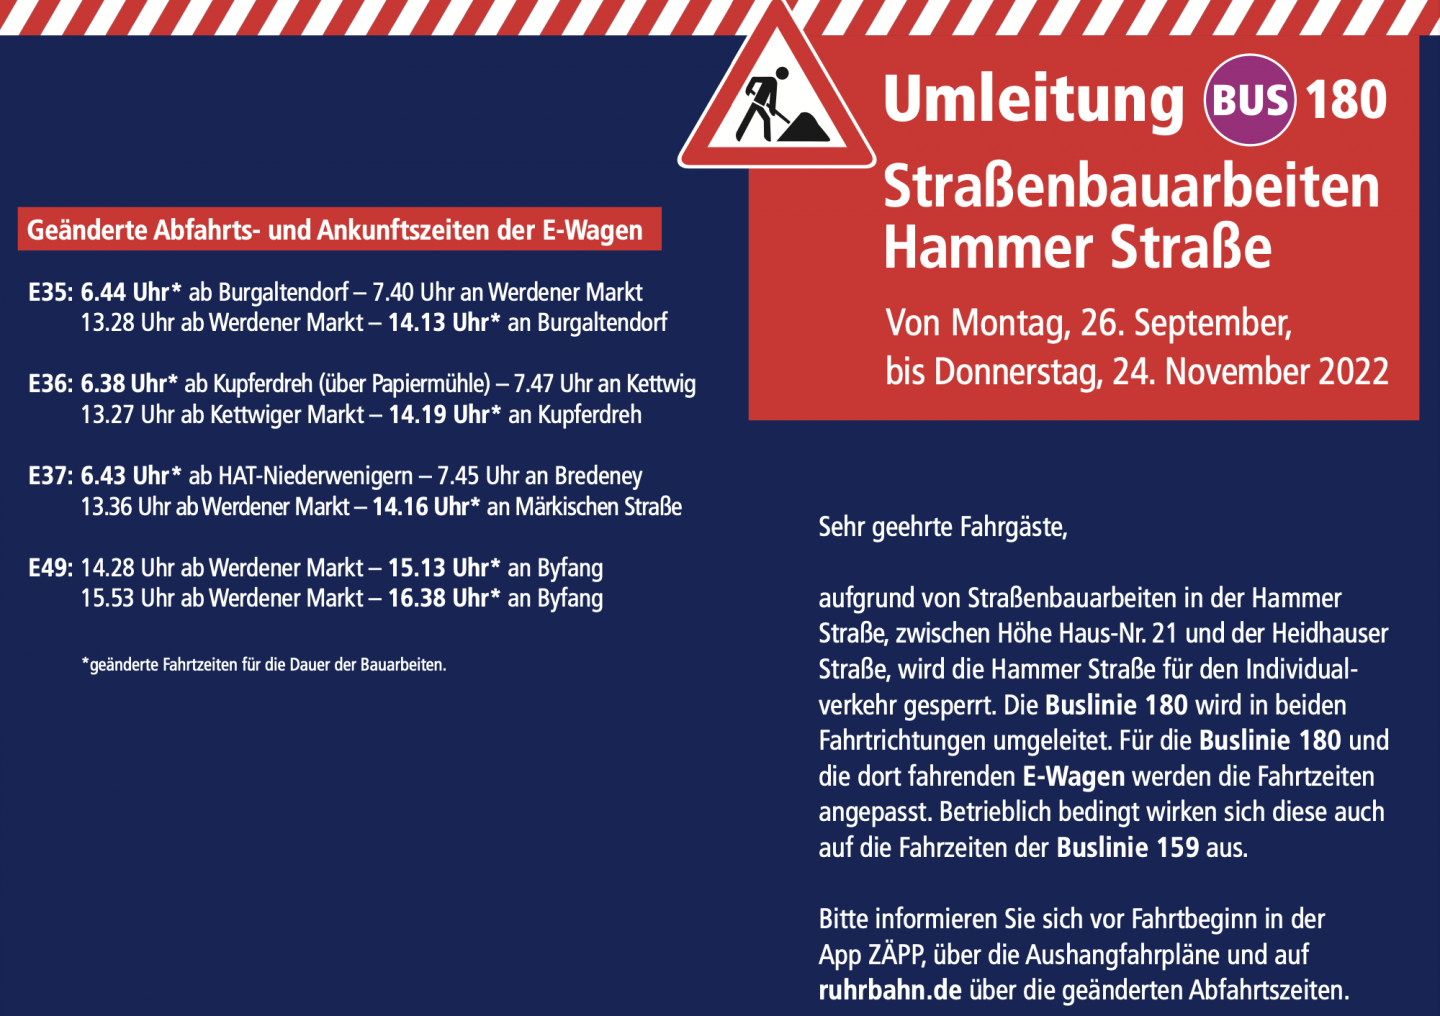 Geänderte Fahrpläne der Ruhr-Bahn ab 26.09.2022